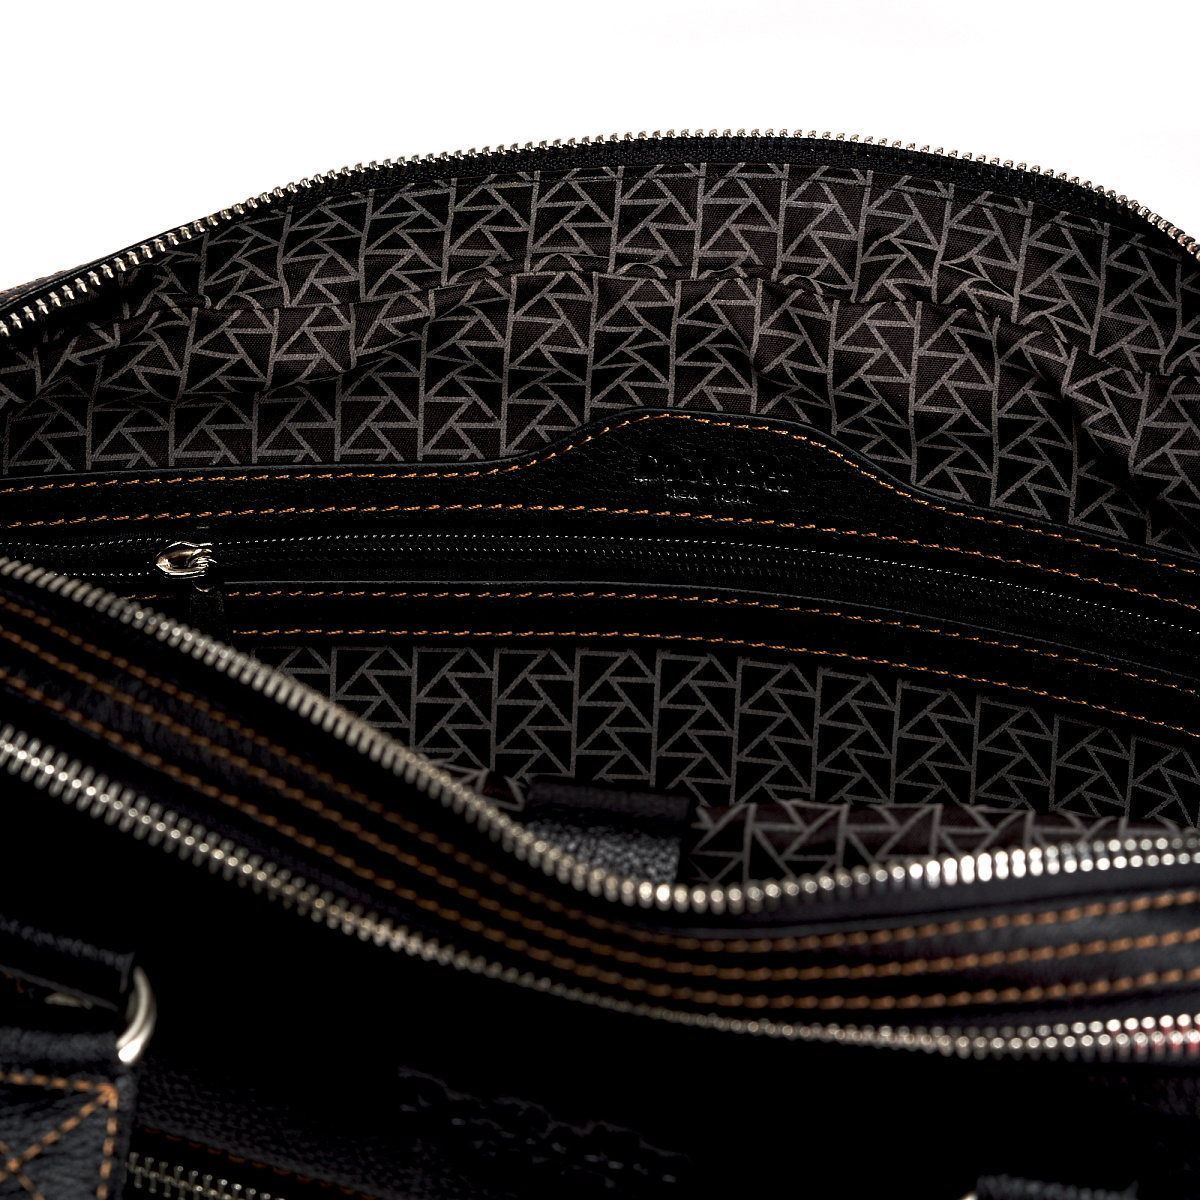 Черная кожаная сумка с карманом на молнии Dr.Koffer B471470-02-04